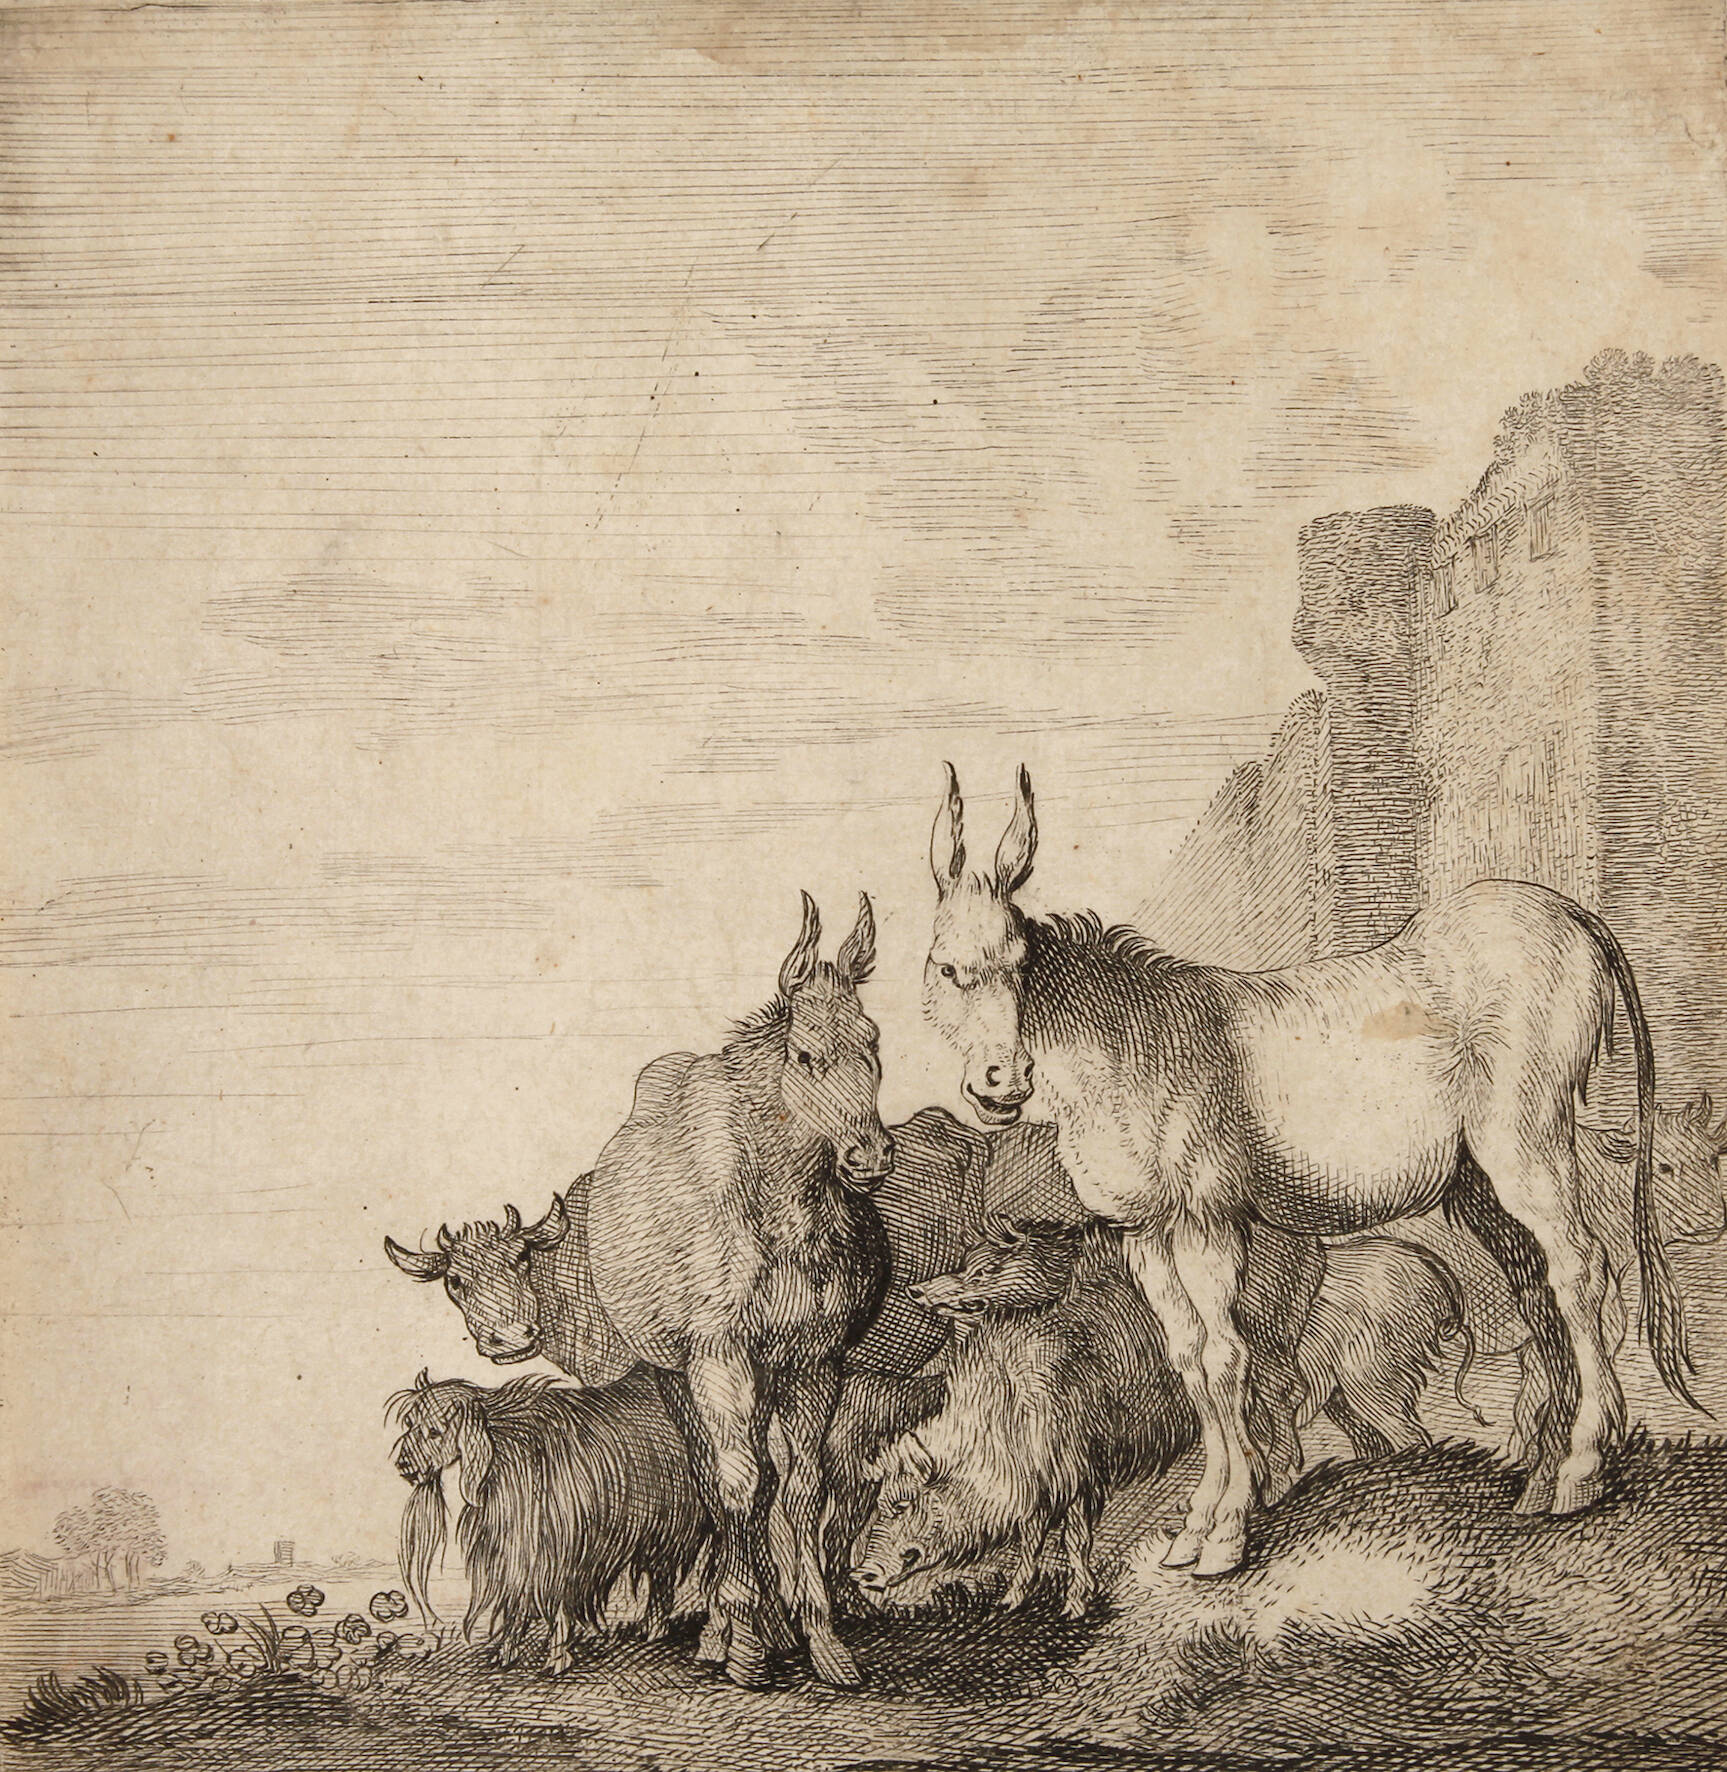 Moses van Uyttenbroeck, attr., "Die Esel"